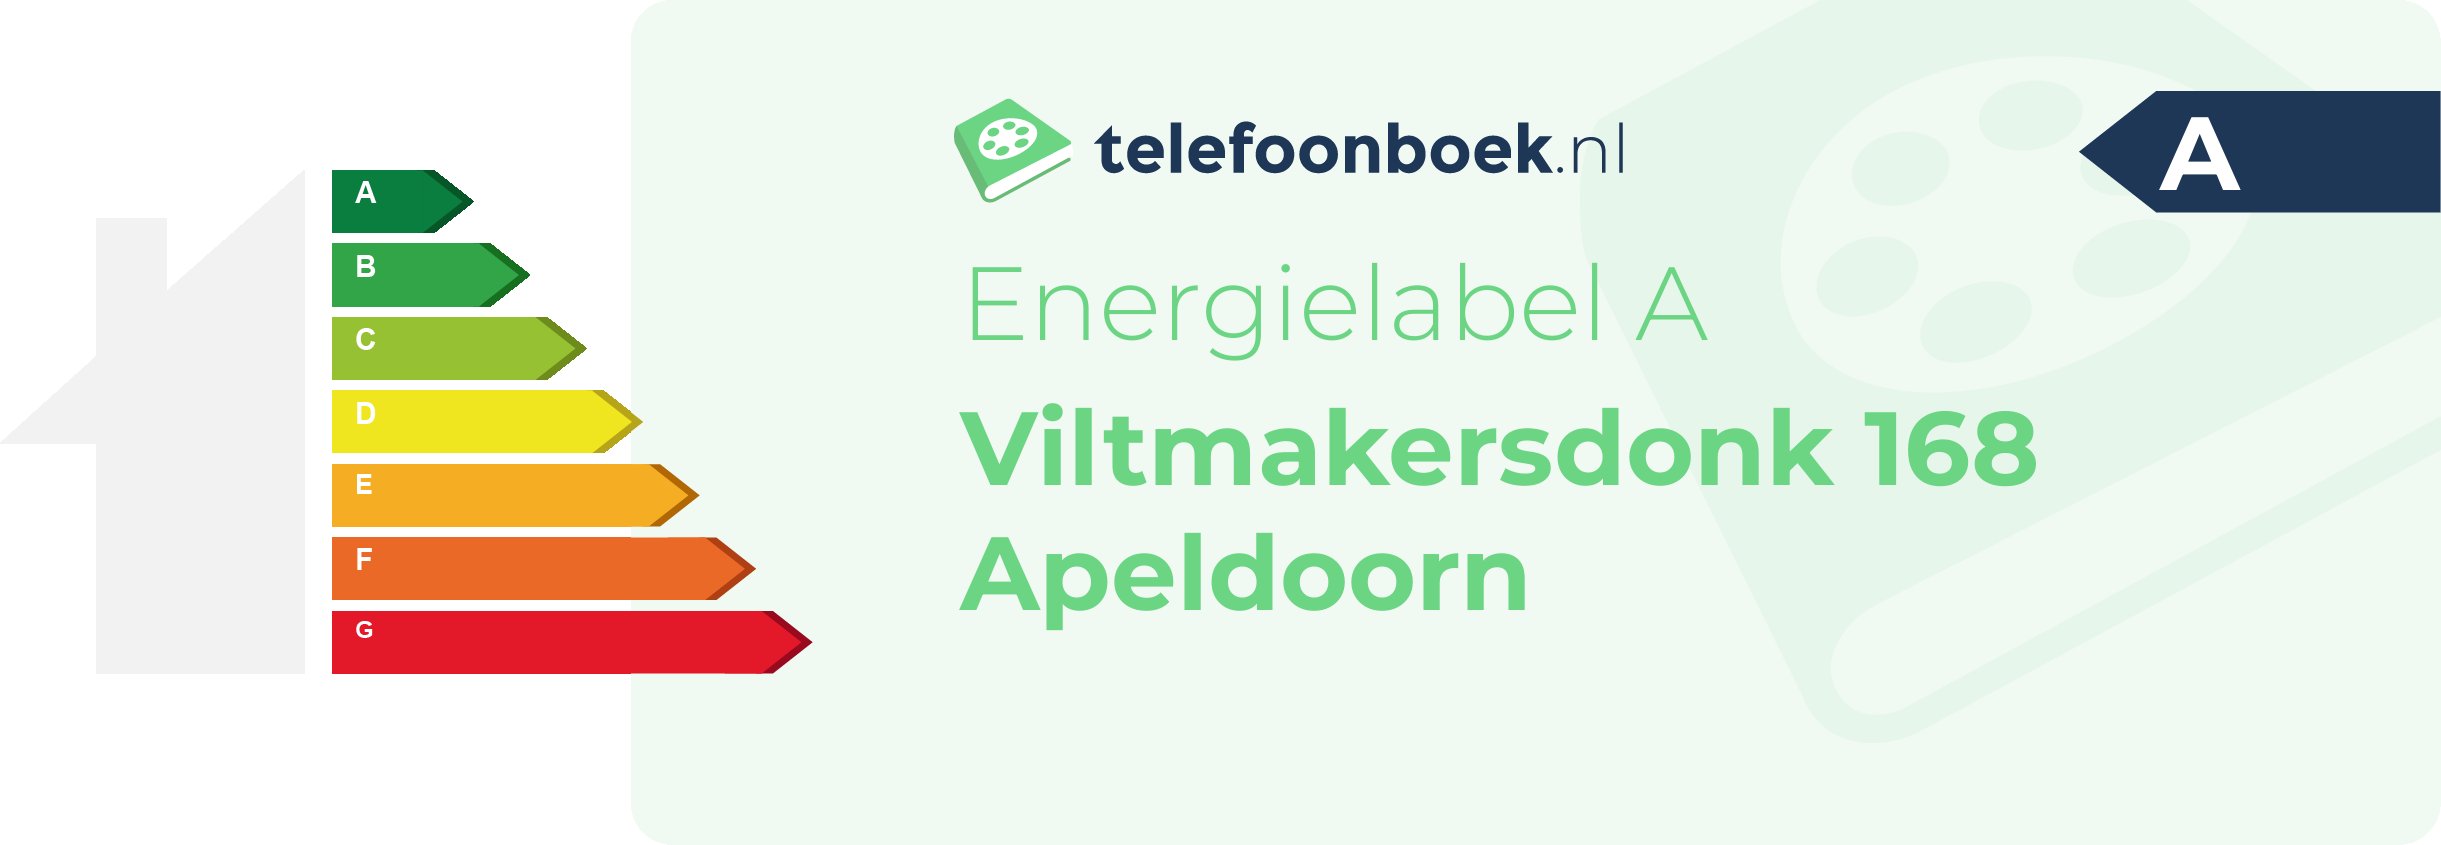 Energielabel Viltmakersdonk 168 Apeldoorn